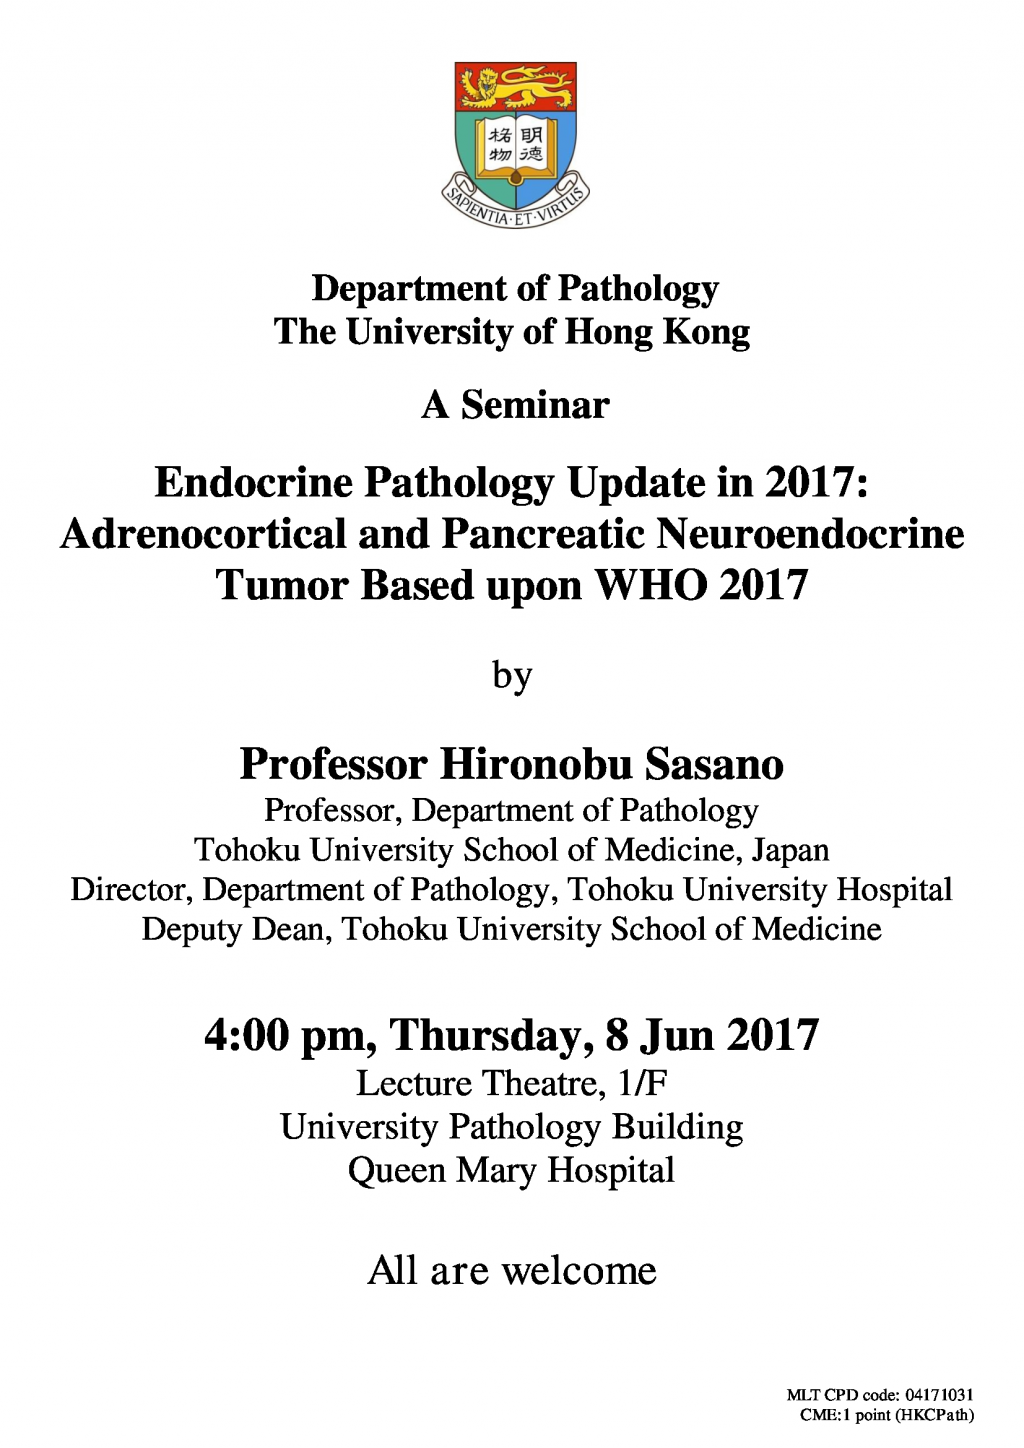 A Seminar by  Professor Hironobu Sasano on 8 Jun (4pm)